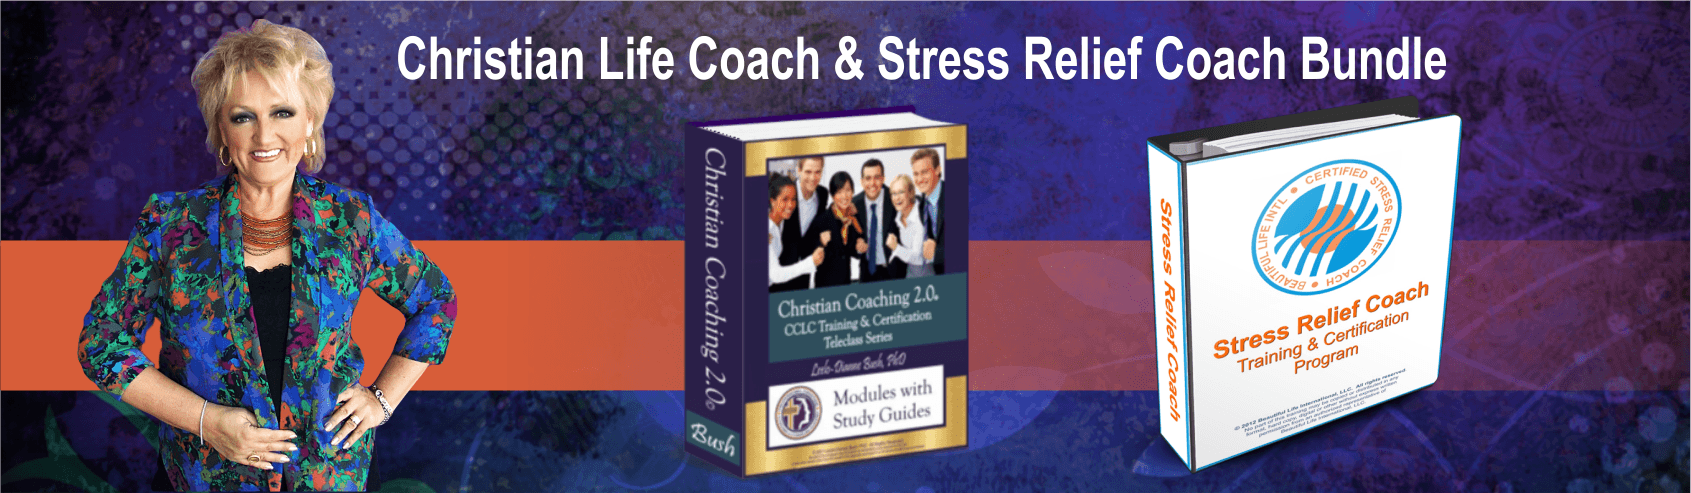 Christian Life Coach plus Stress Relief Coach bundled at PCCCA https://pccca.org/course-bundles/